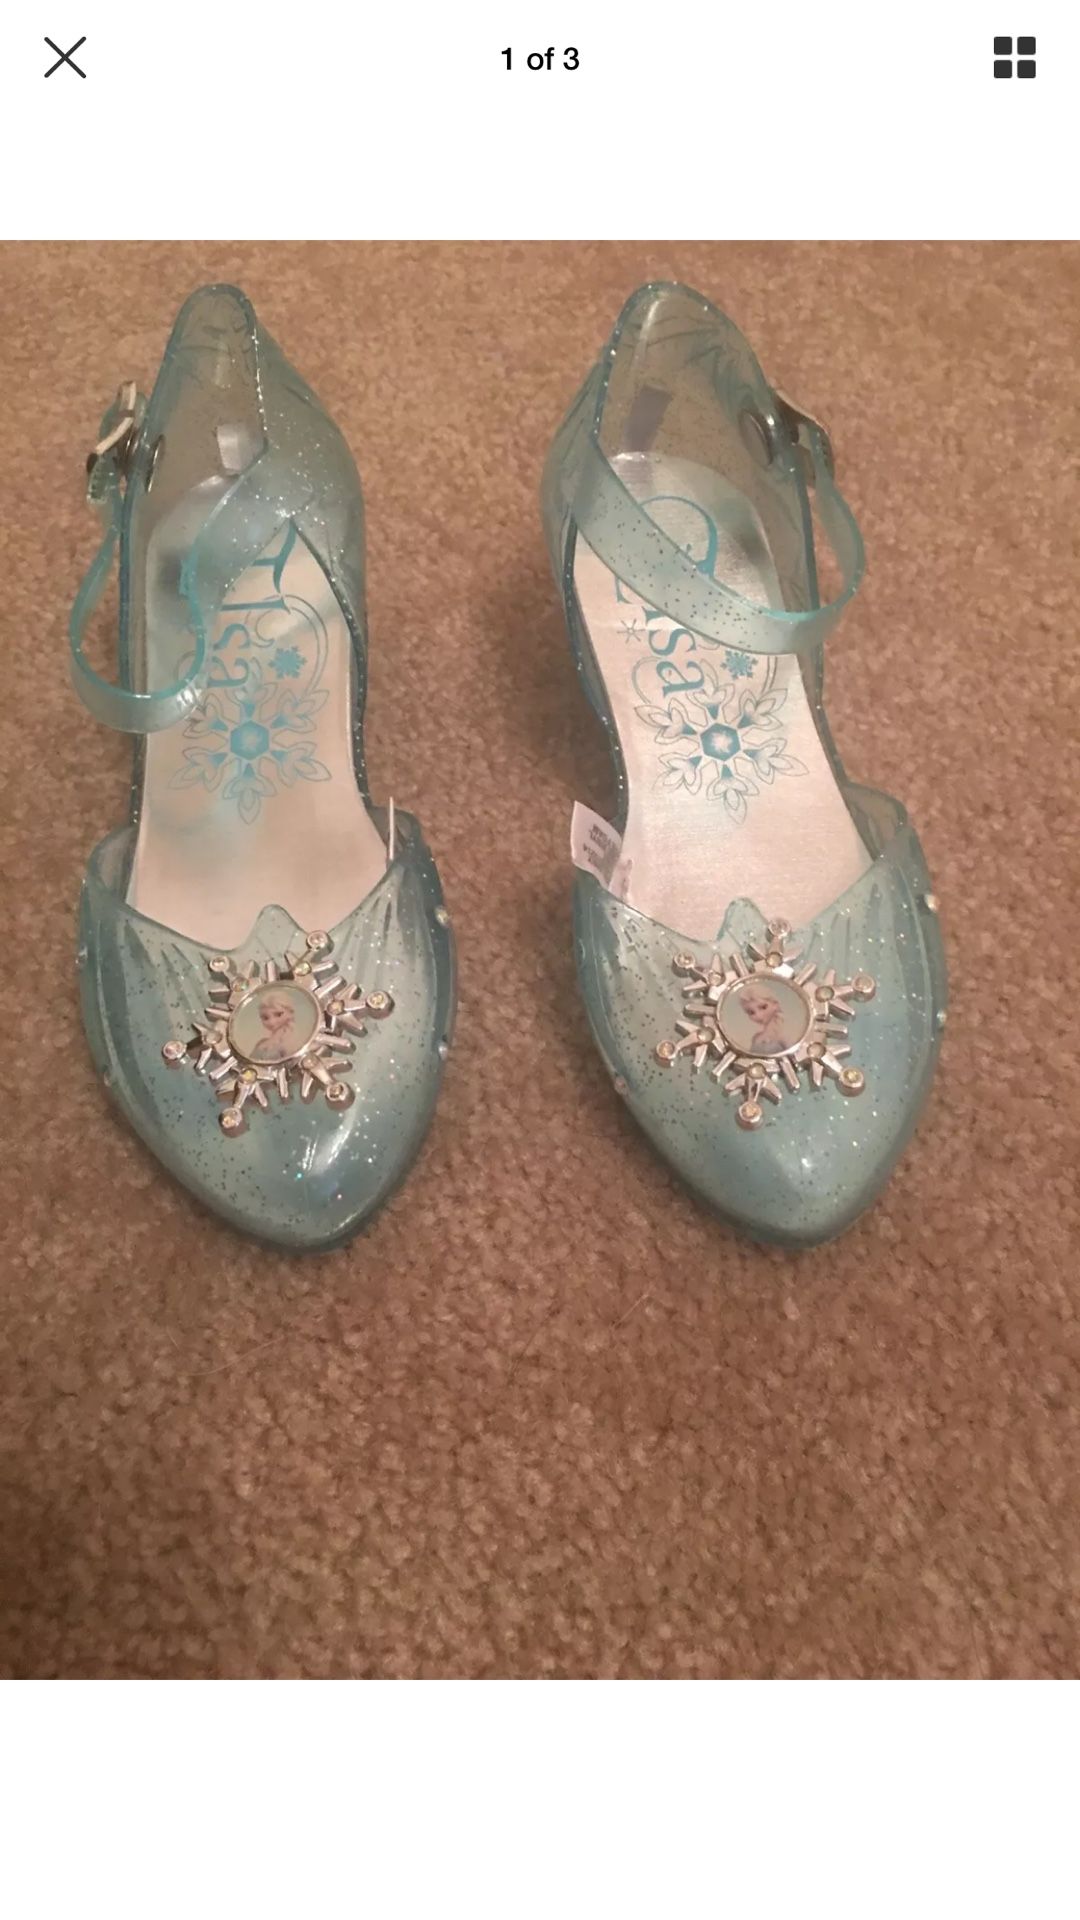 Elsa light up shoes size 11/12